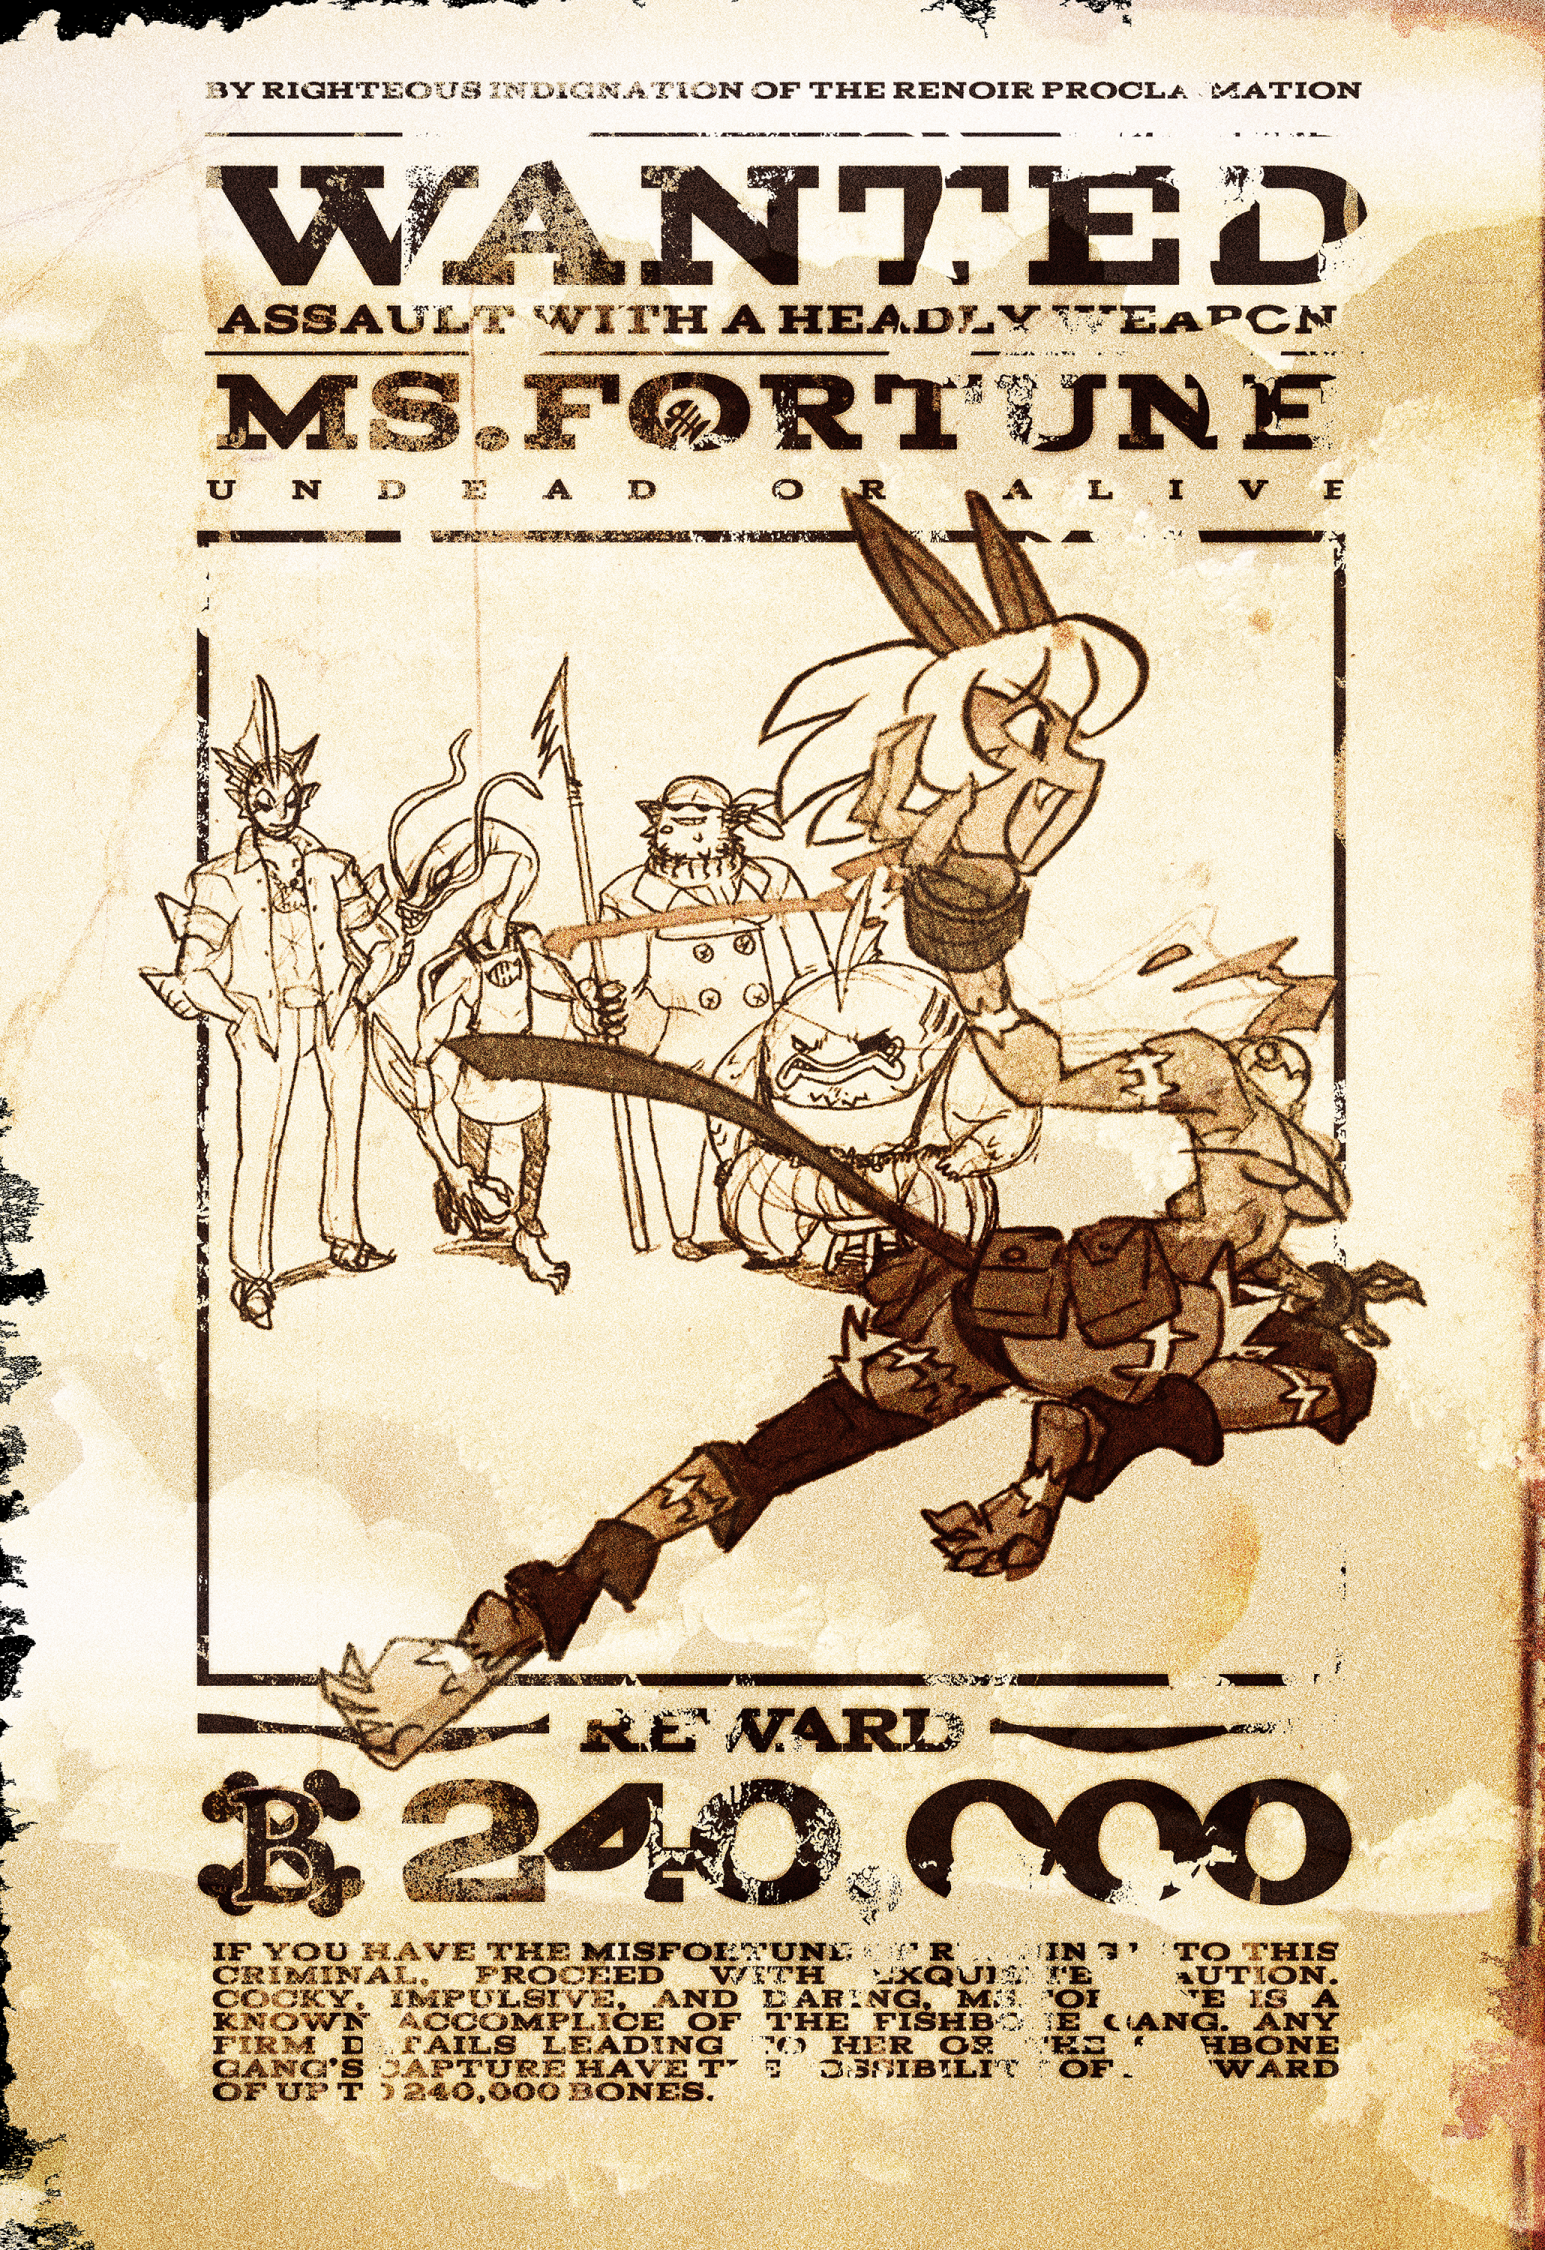 Ms. Fortune